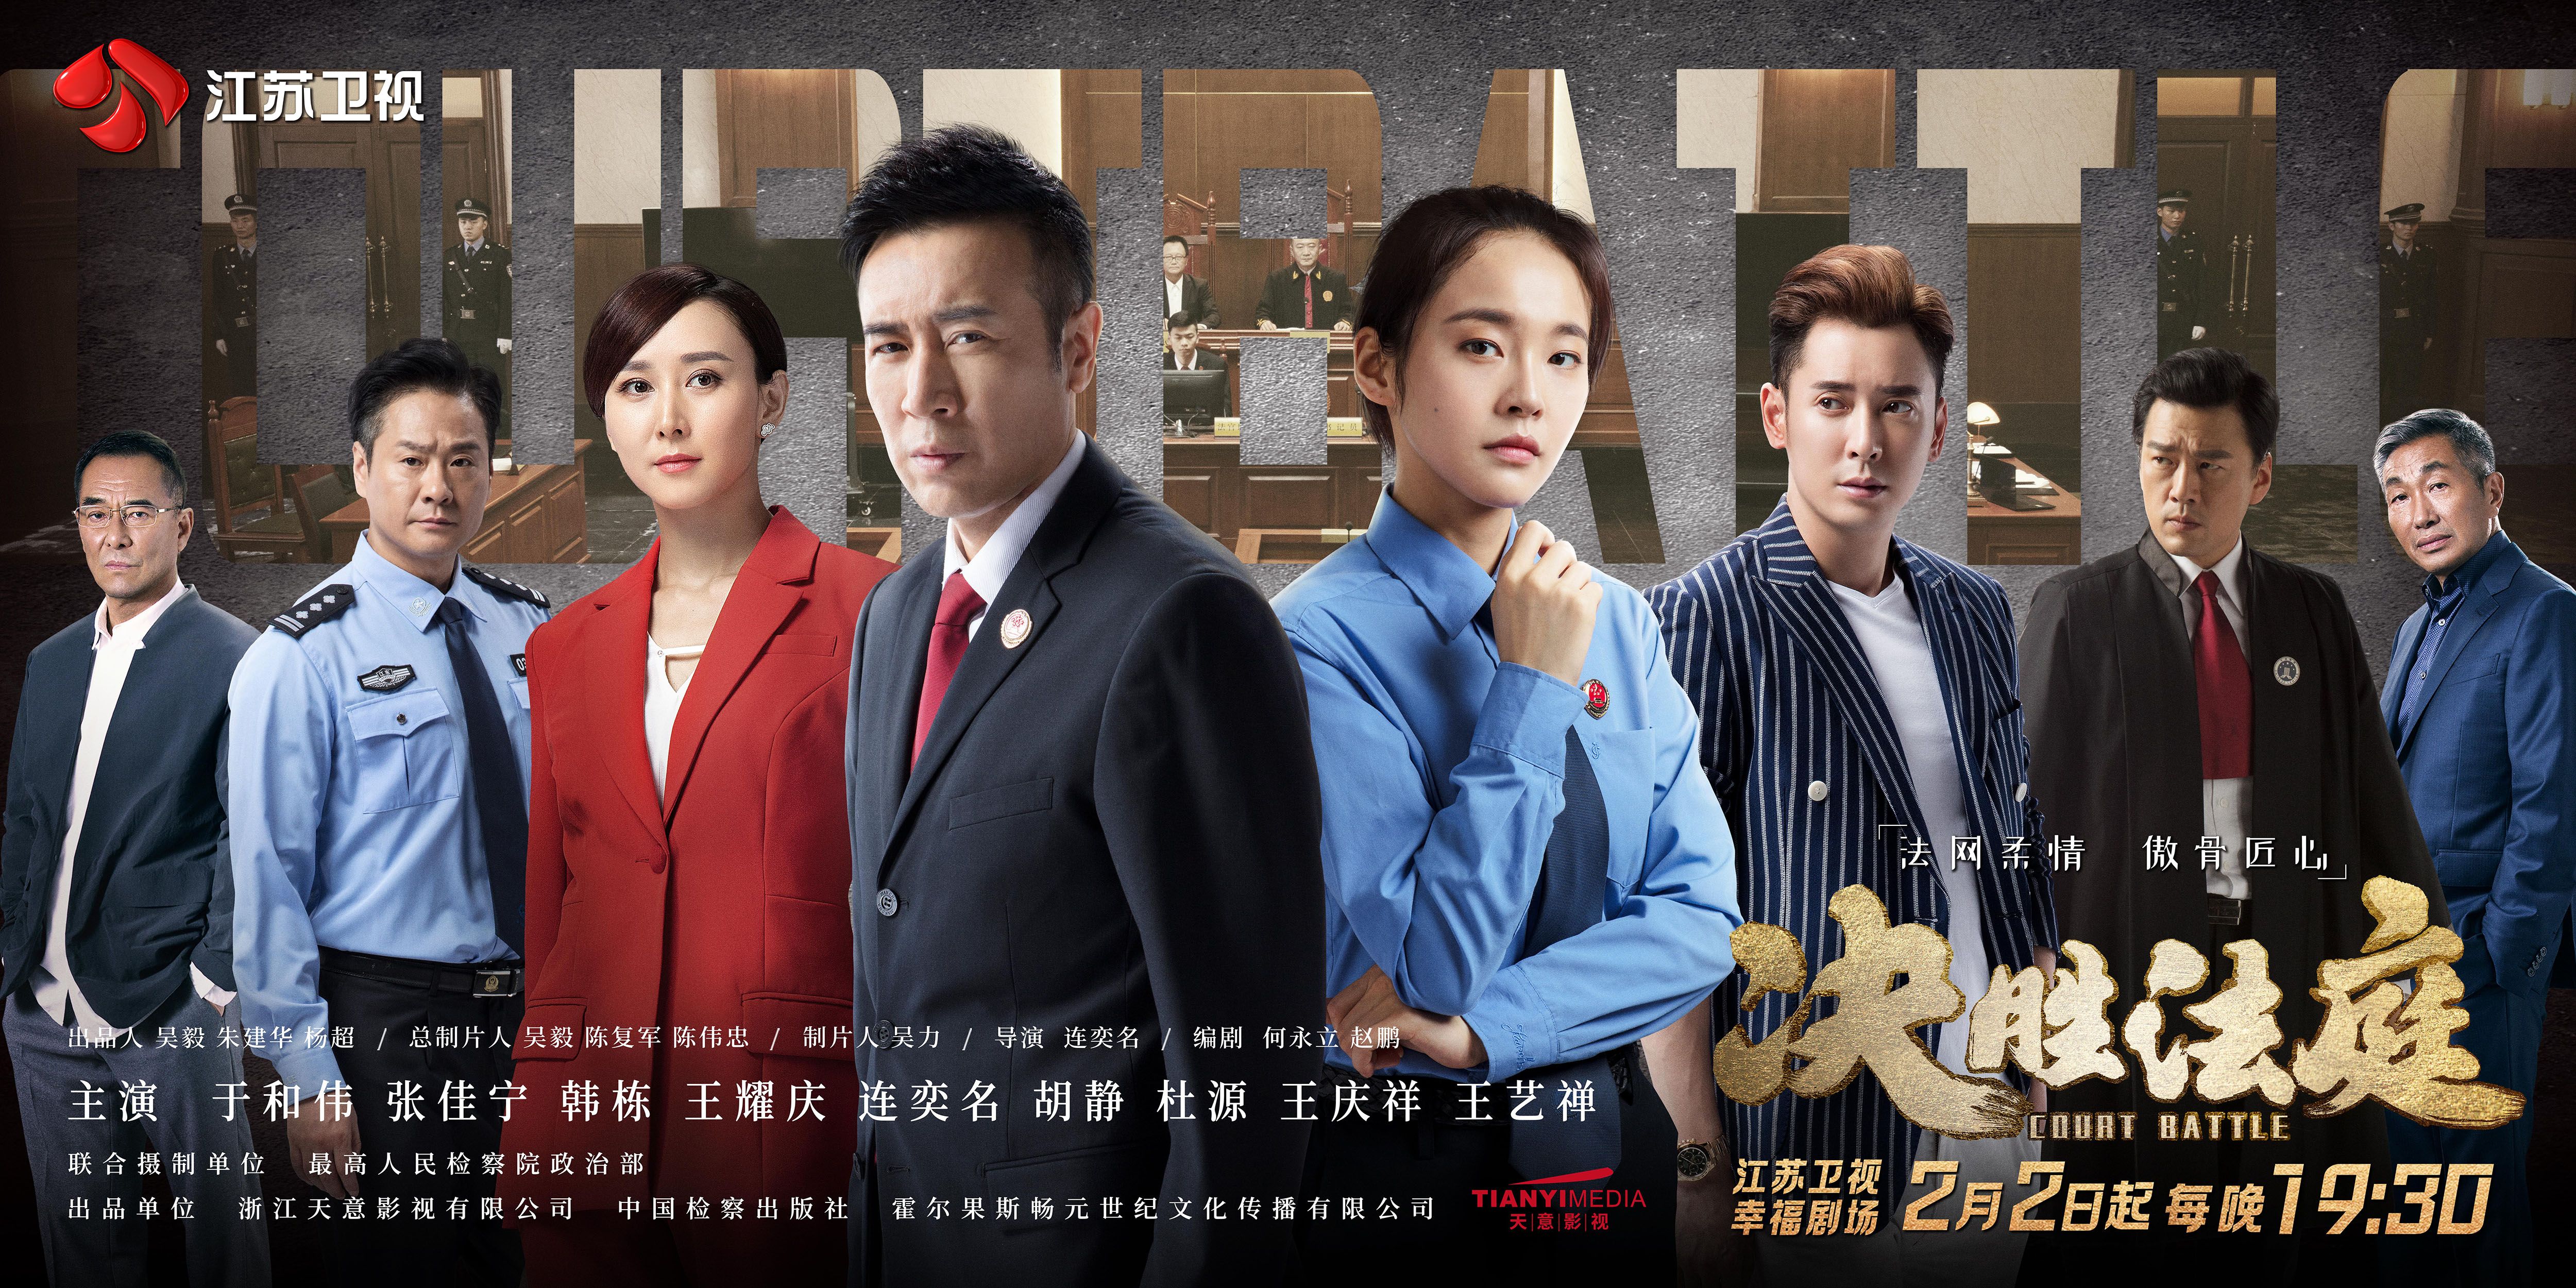 搜狐娱乐讯 作为一部全景检察社会剧,江苏卫视幸福剧场正在播出的